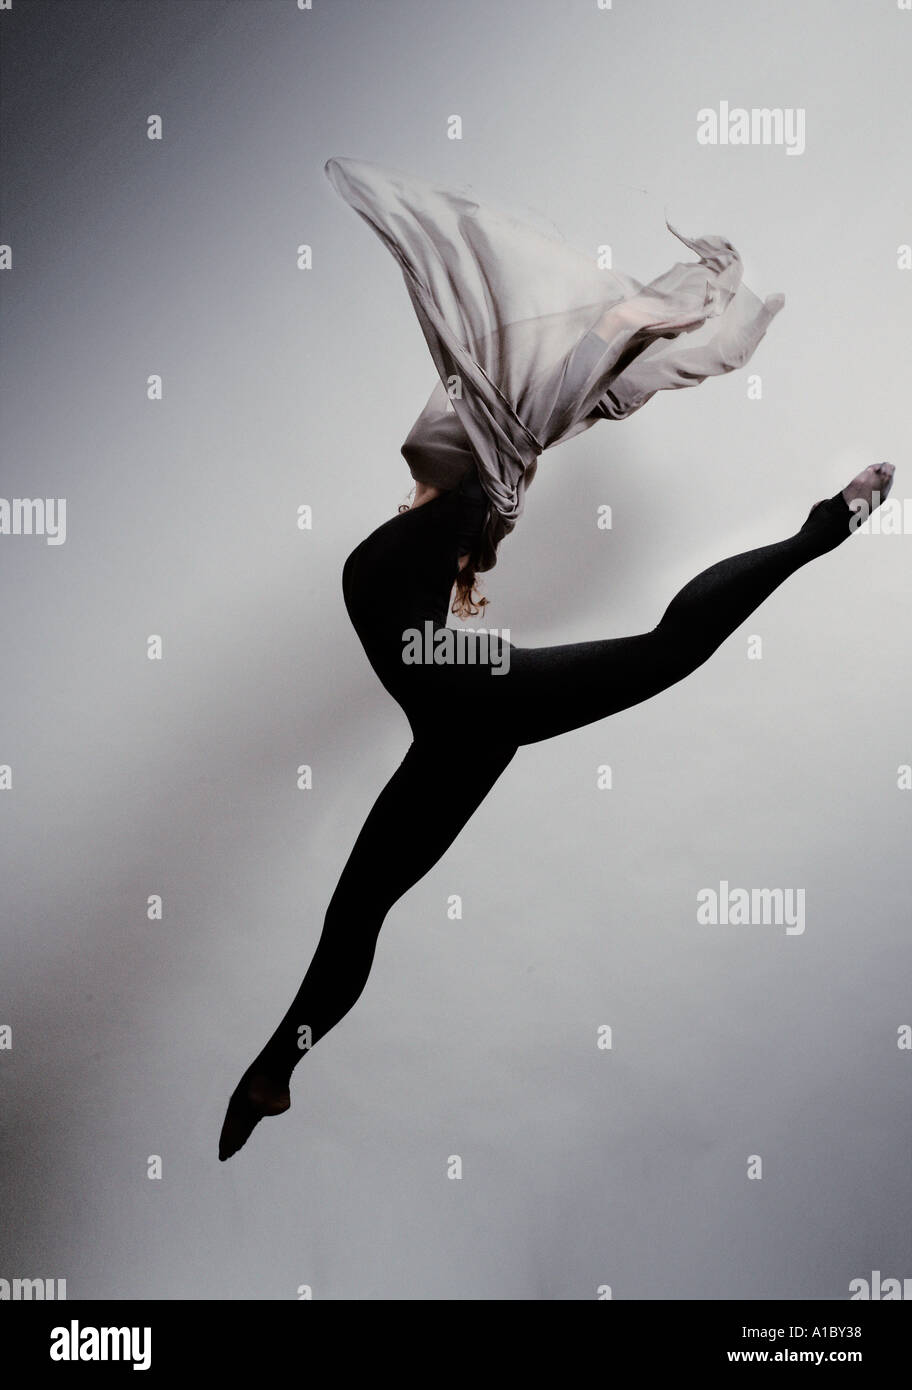 Ballerine femme sautant avec un foulard de soie Banque D'Images